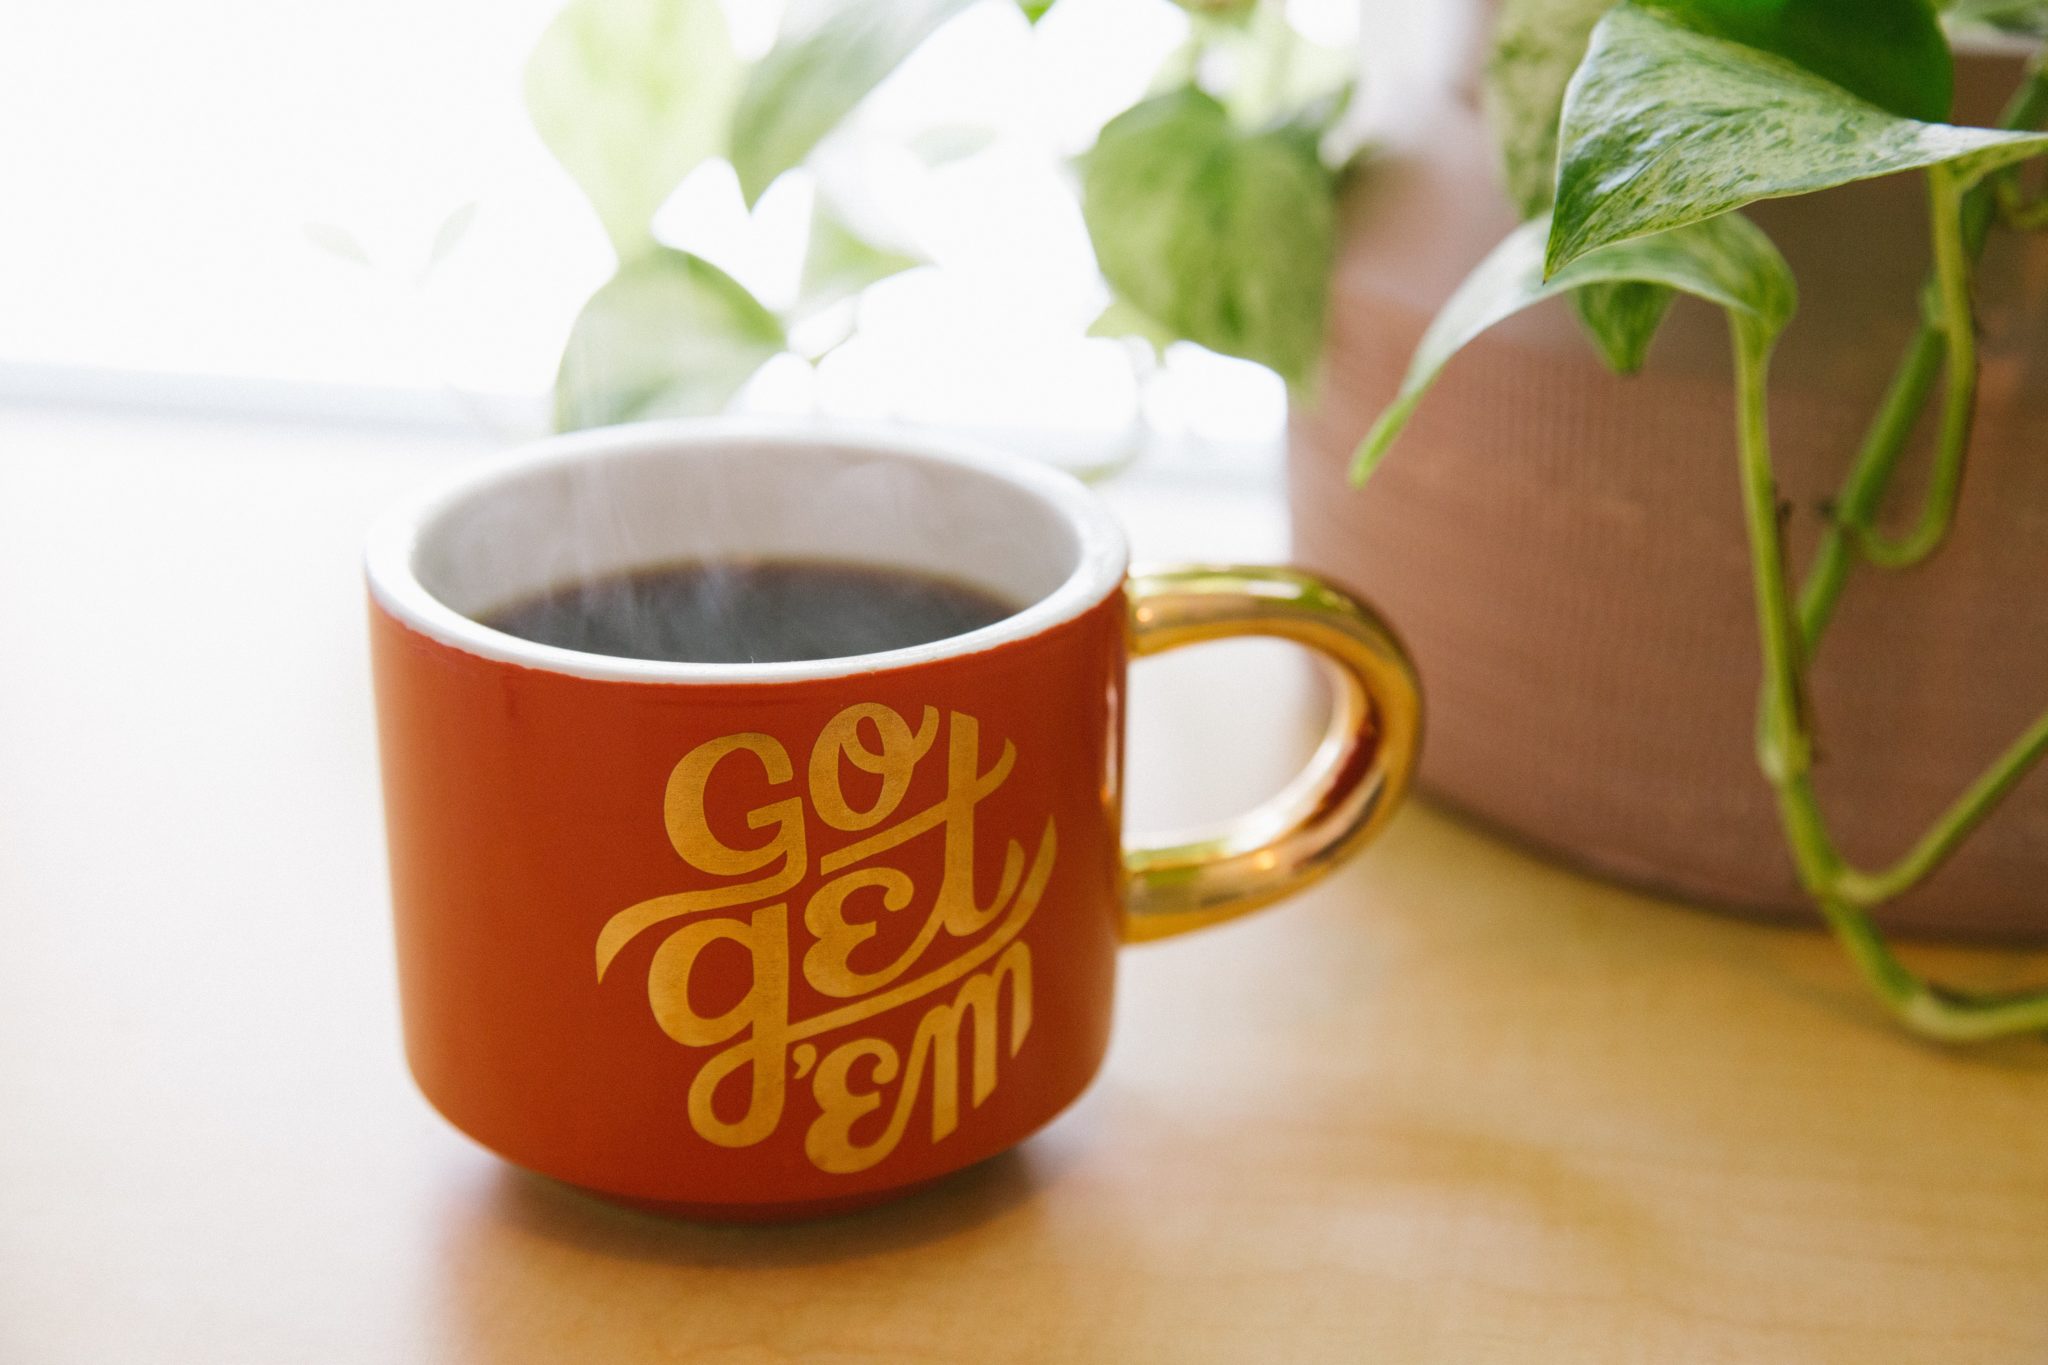 Go Get 'em mug with coffee inside